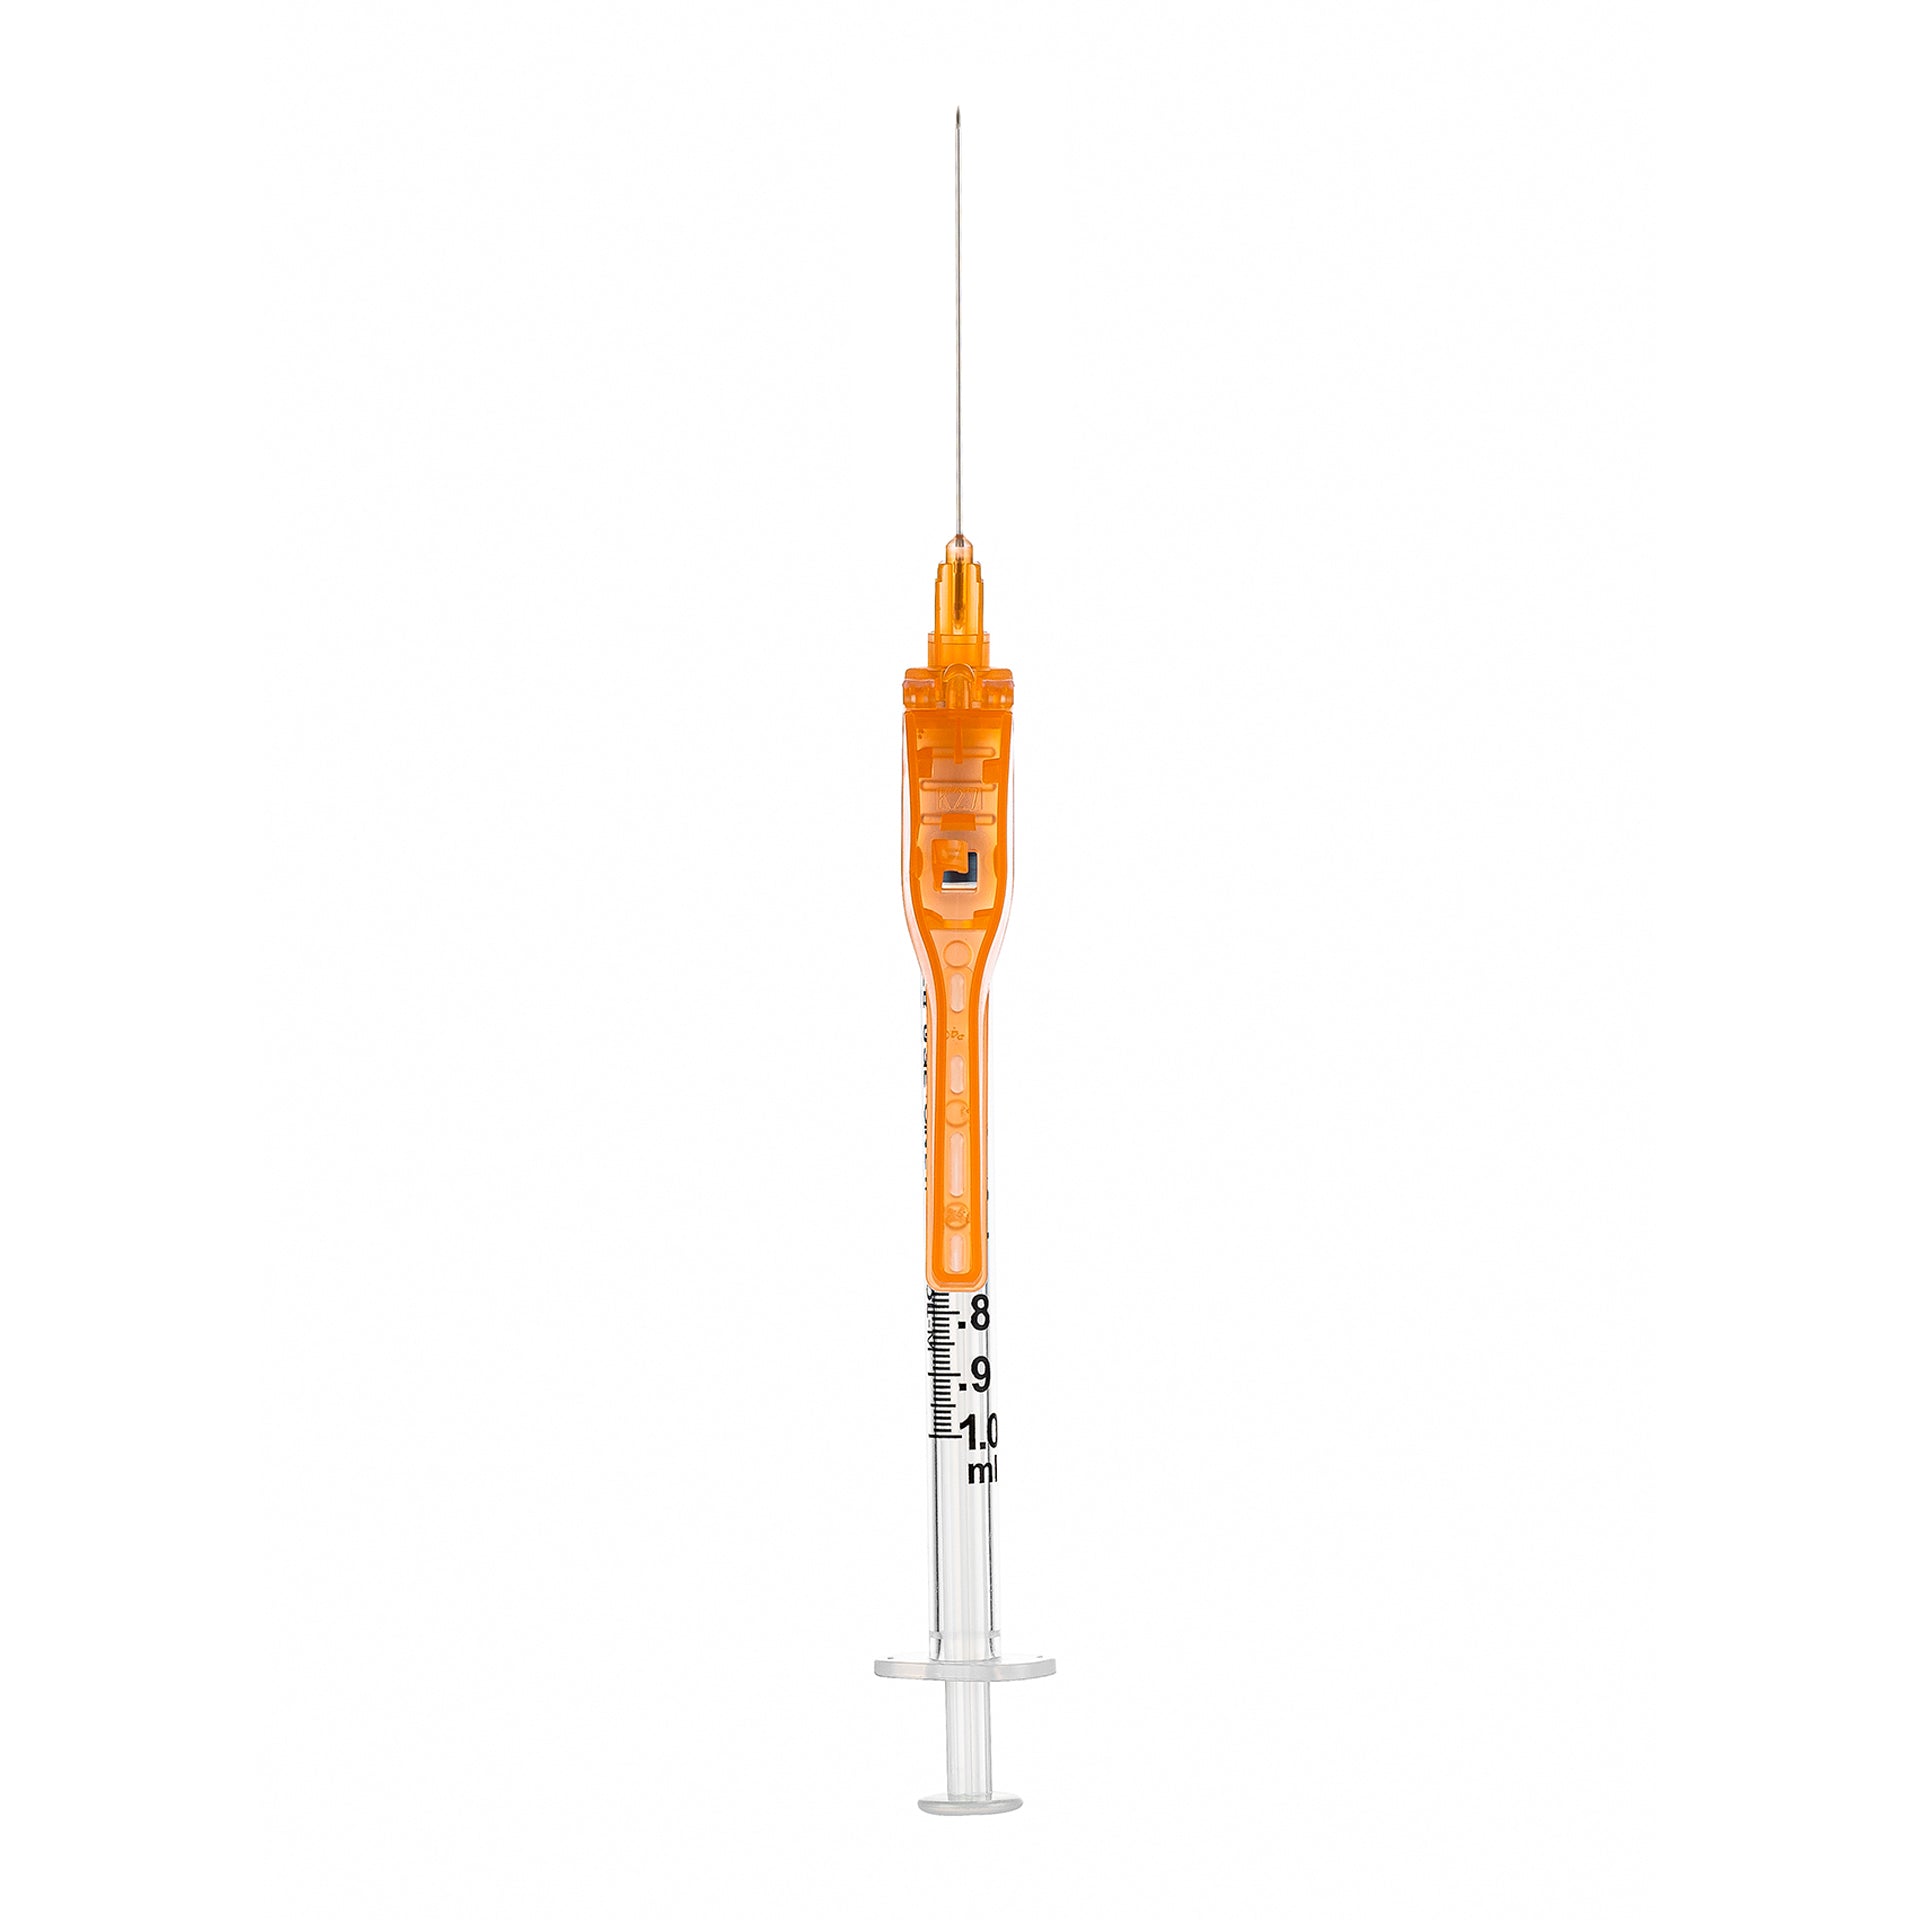 SOL-CARE 3ml Luer Lock Syringe w/Safety Needle 21G*1 1/2 (needle aside)